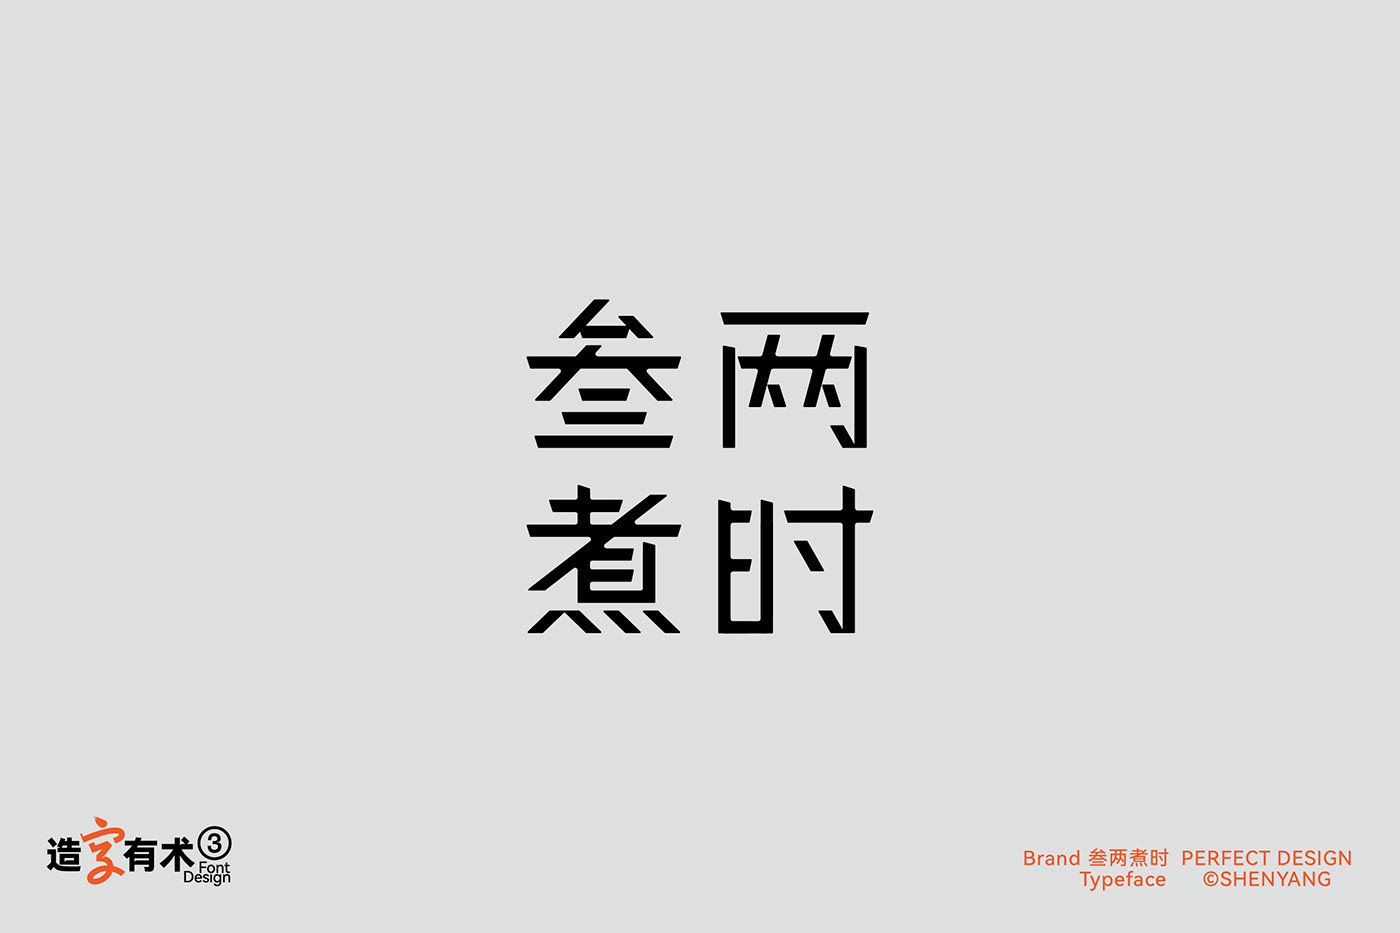 字体设计 图形设计 Logo设计 Logo Design Typeface 汉字设计   字體設計 中文 Logotype 漢字設計